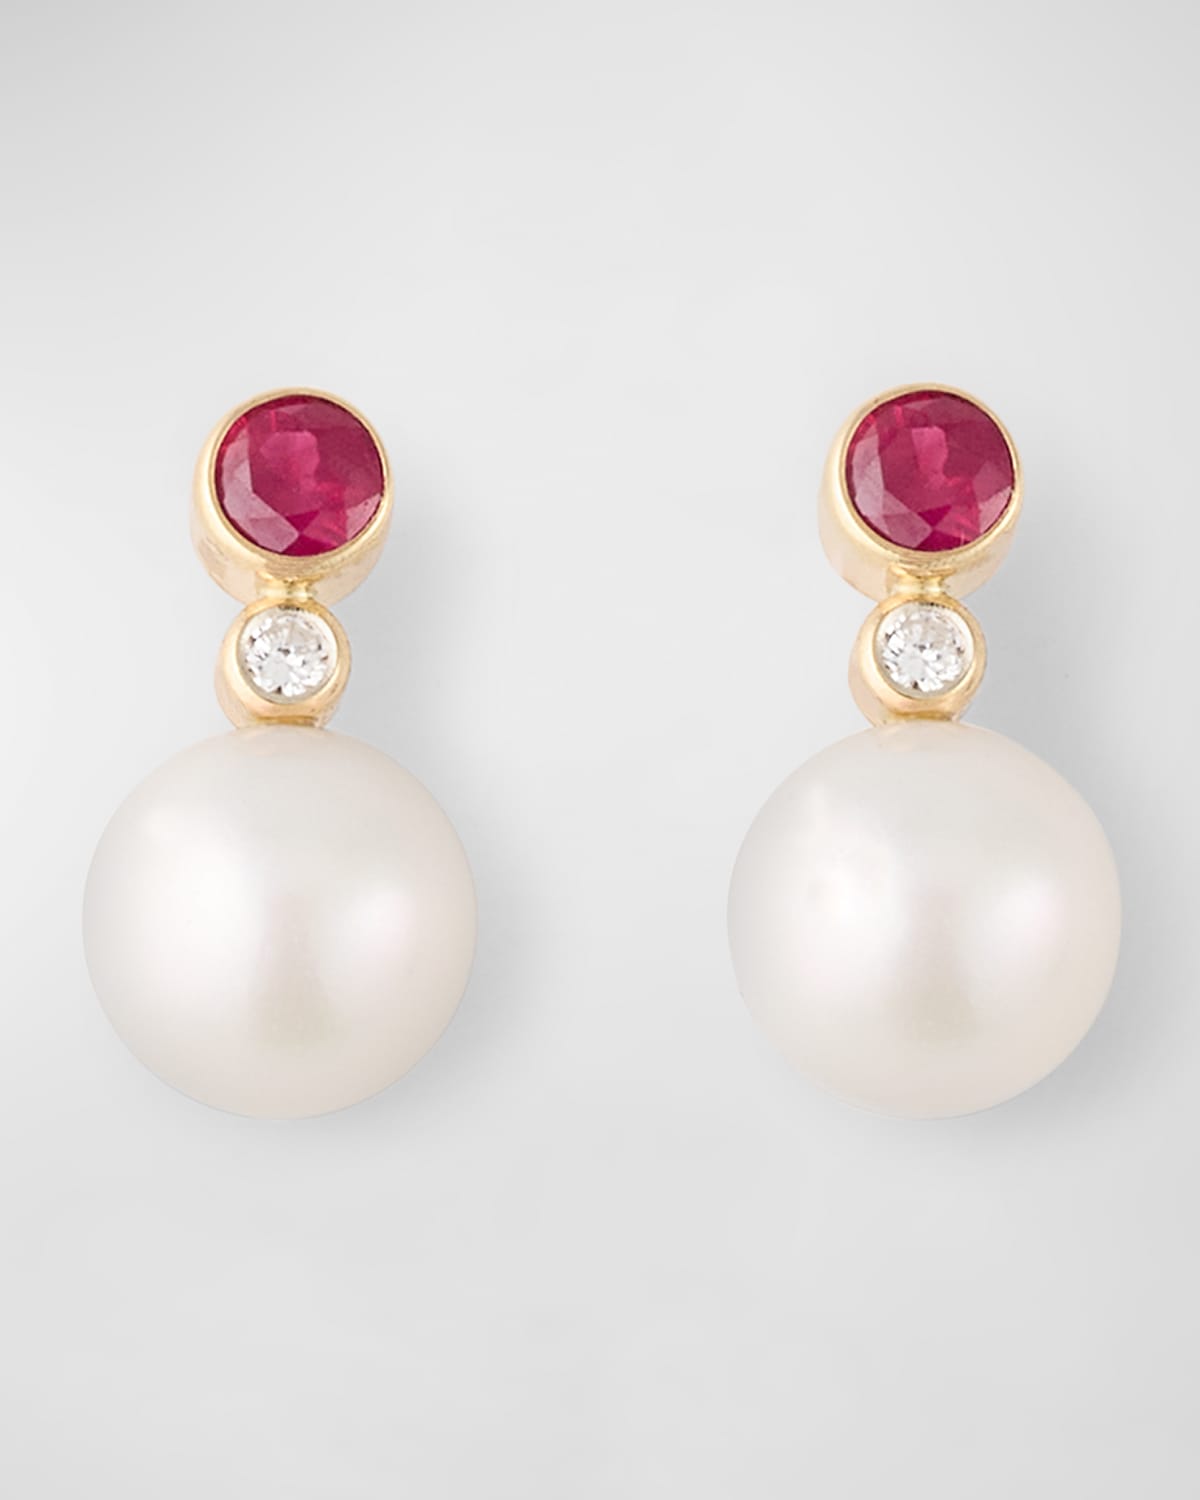 Poppy Finch Gemstone Diamond Pearl Stud Earrings In Ruby